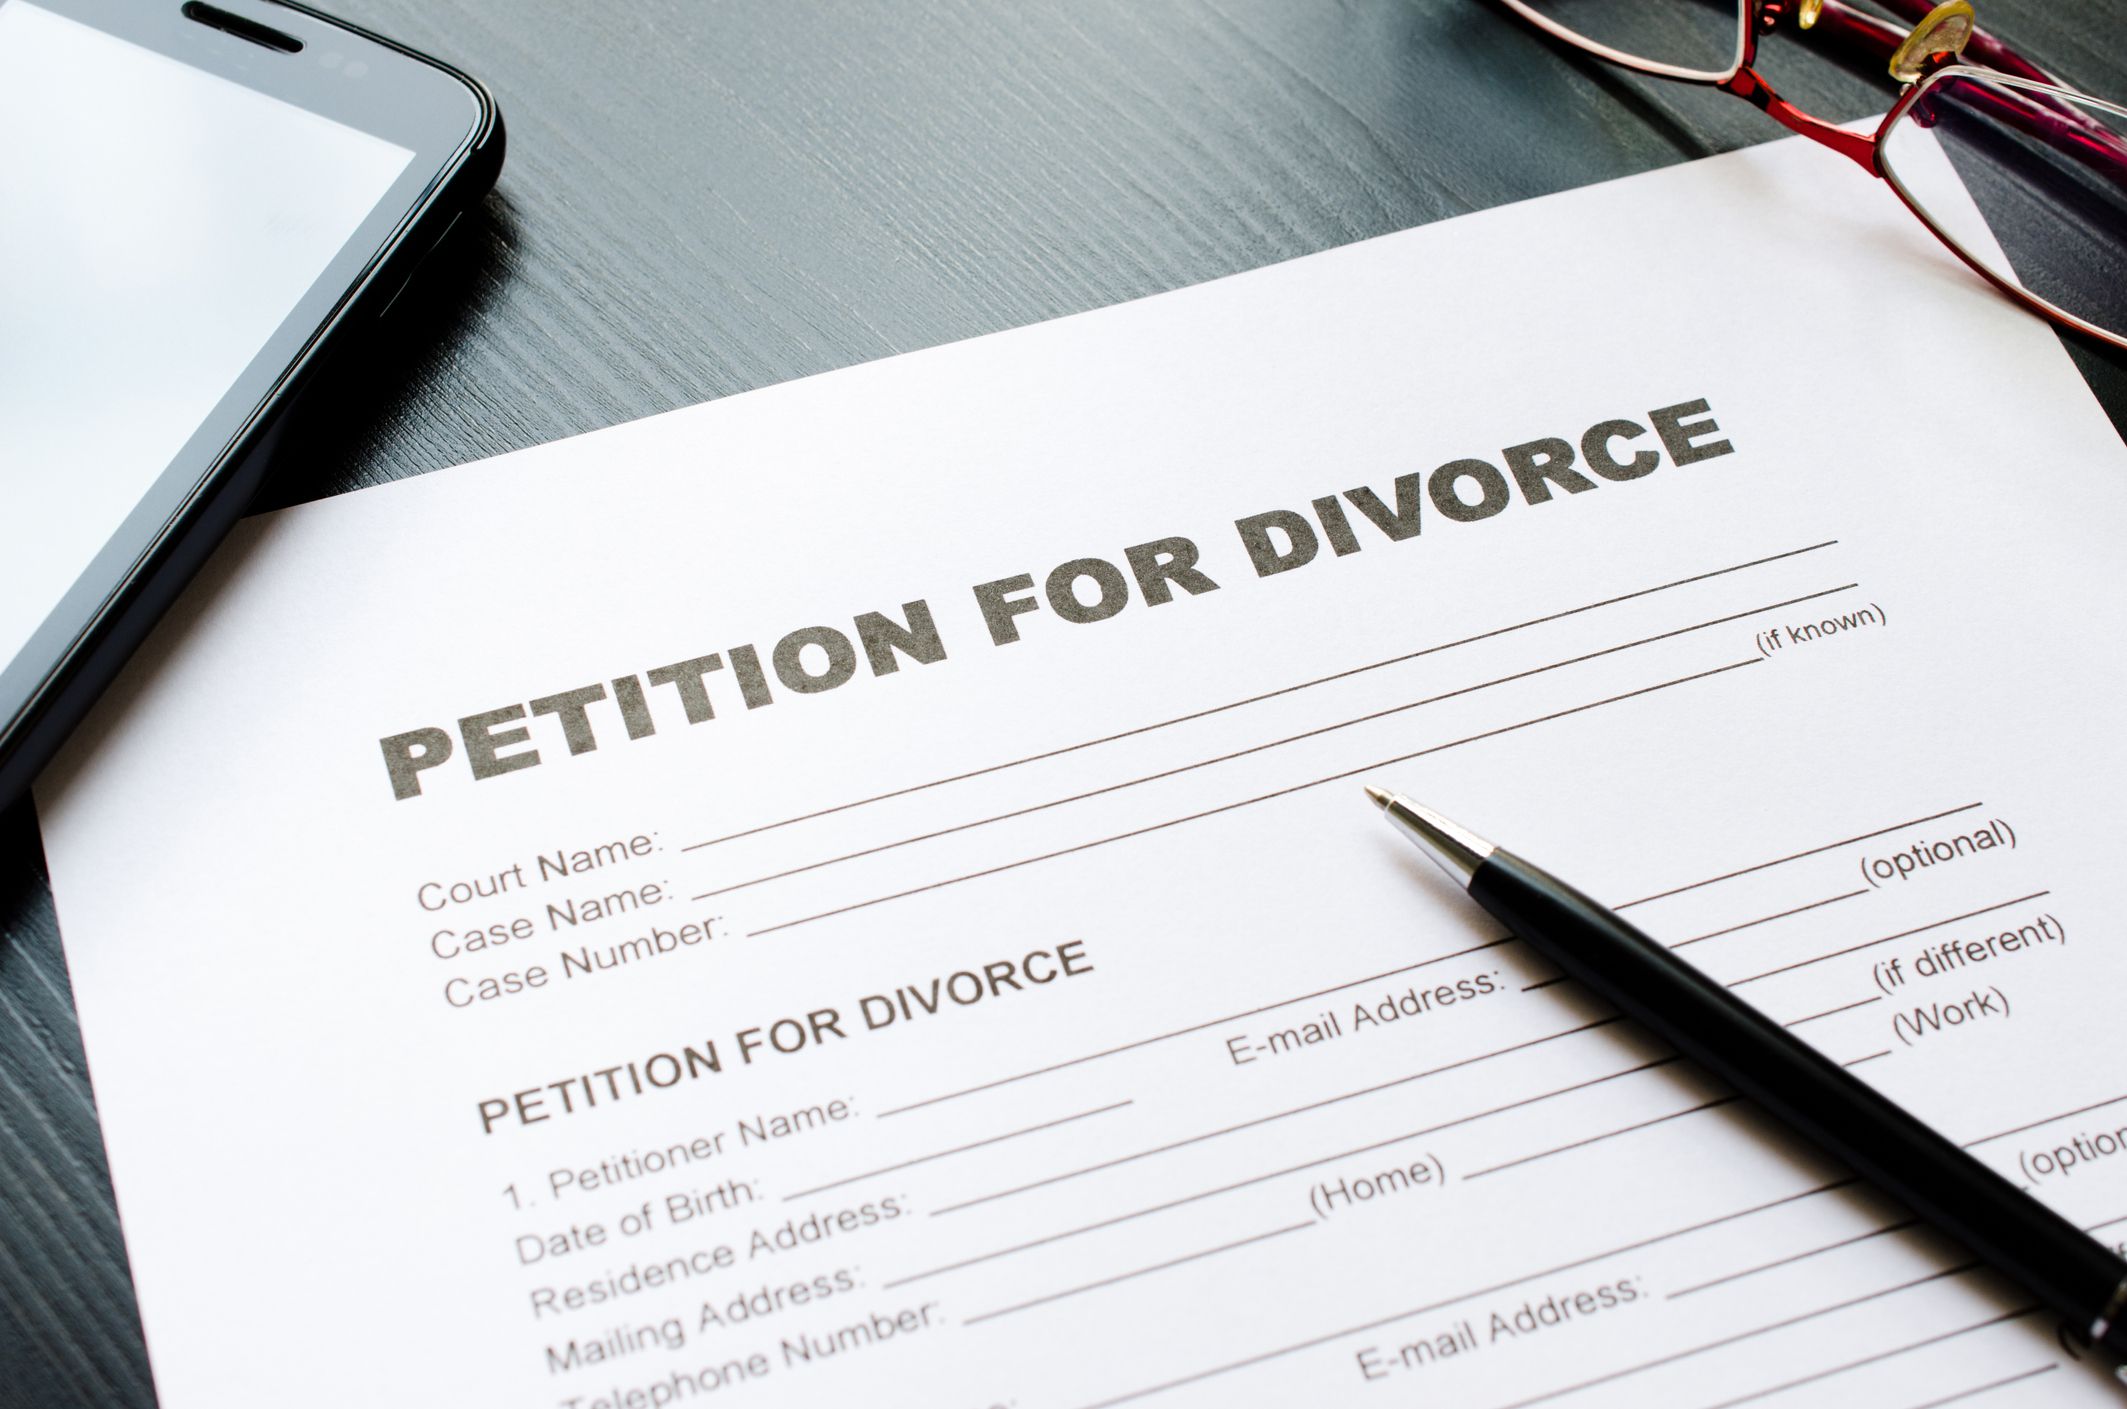 How Do I File For Divorce?